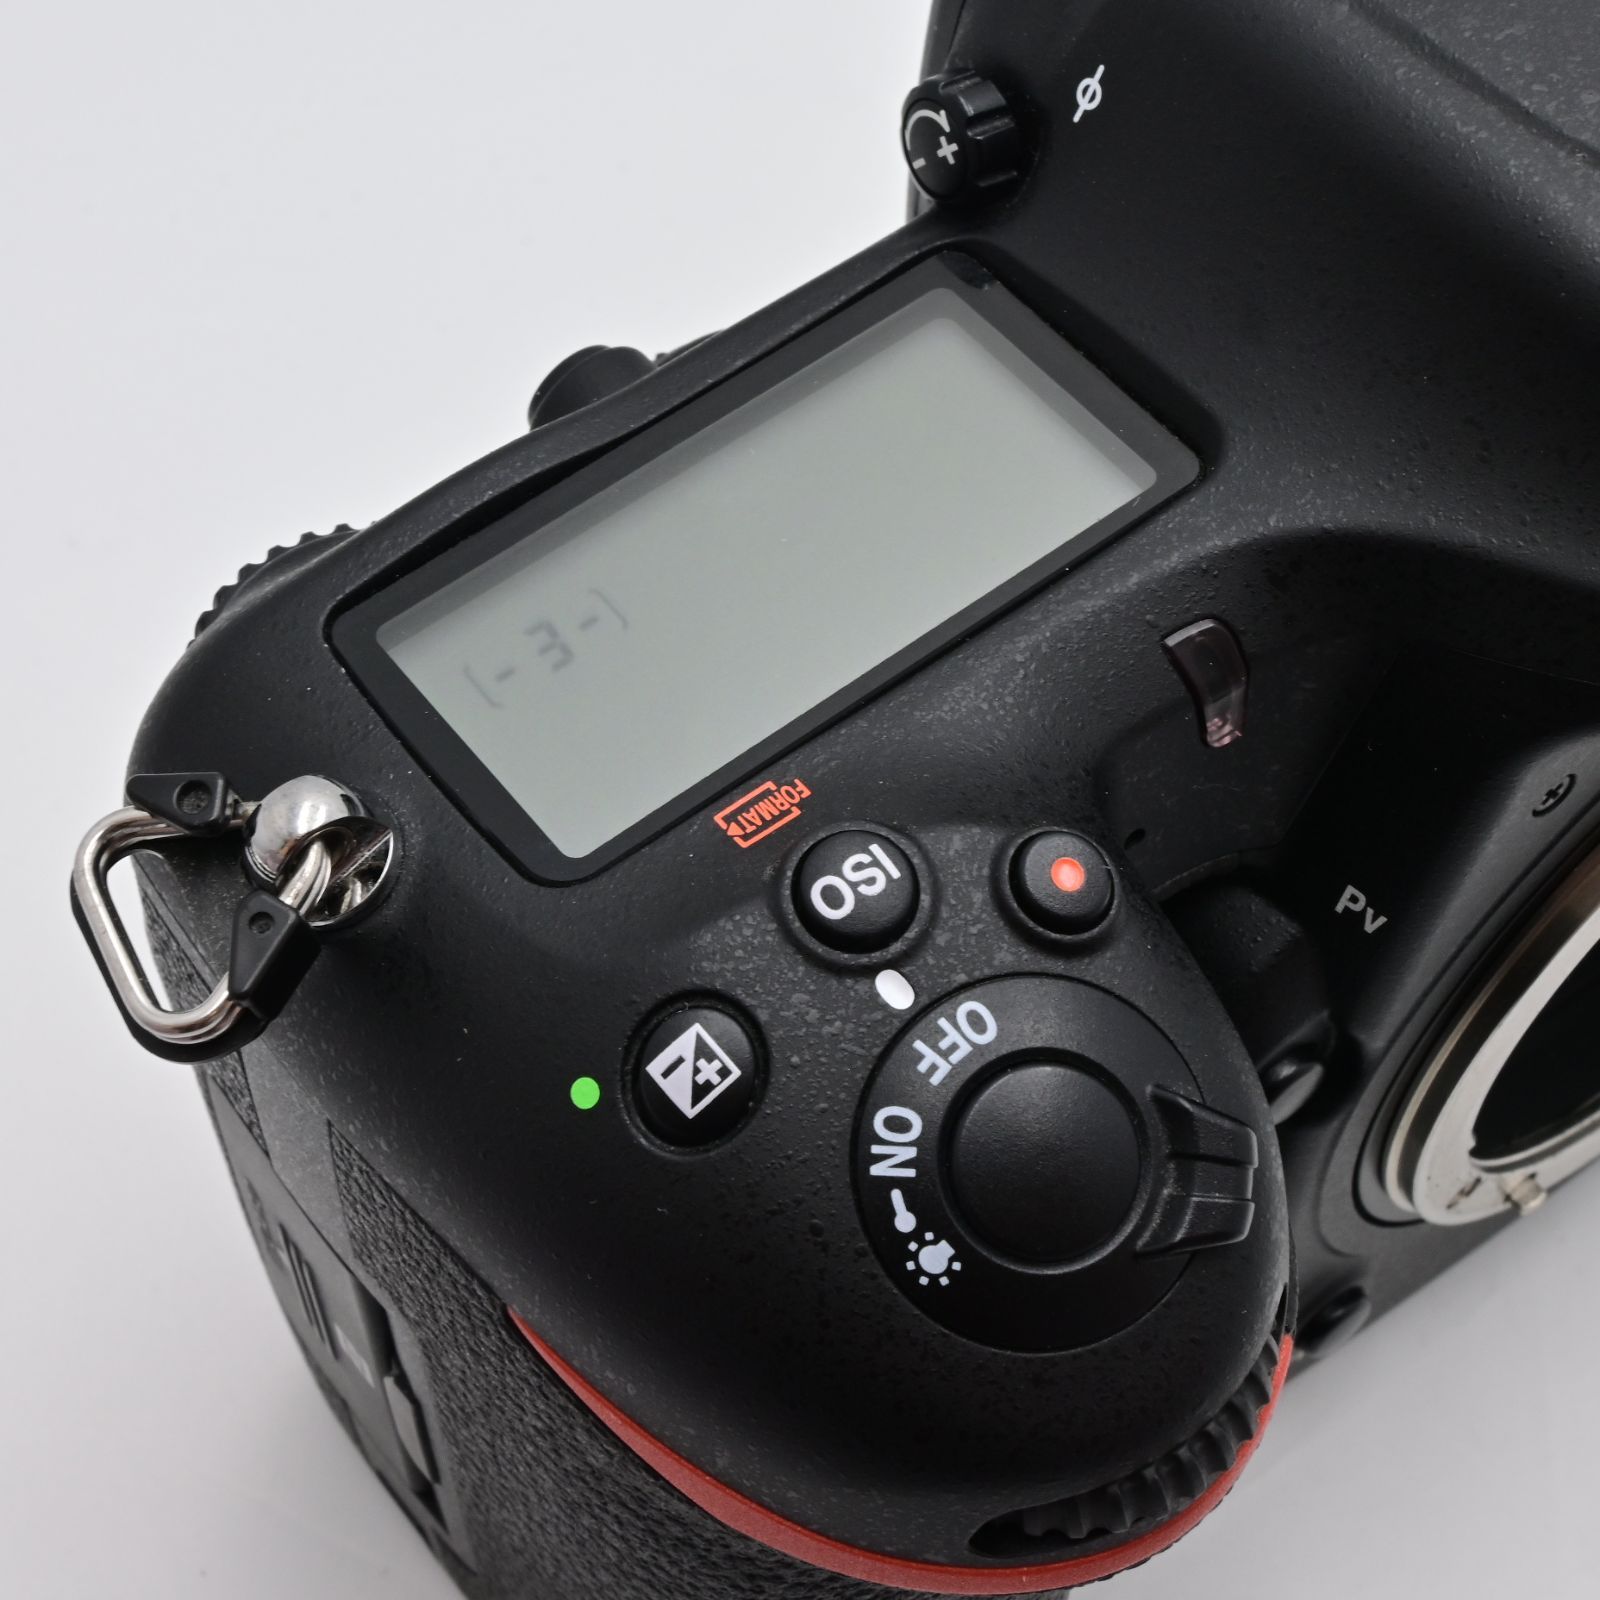 シャッター回数『3245』ニコン Nikon デジタル一眼レフカメラ D500 